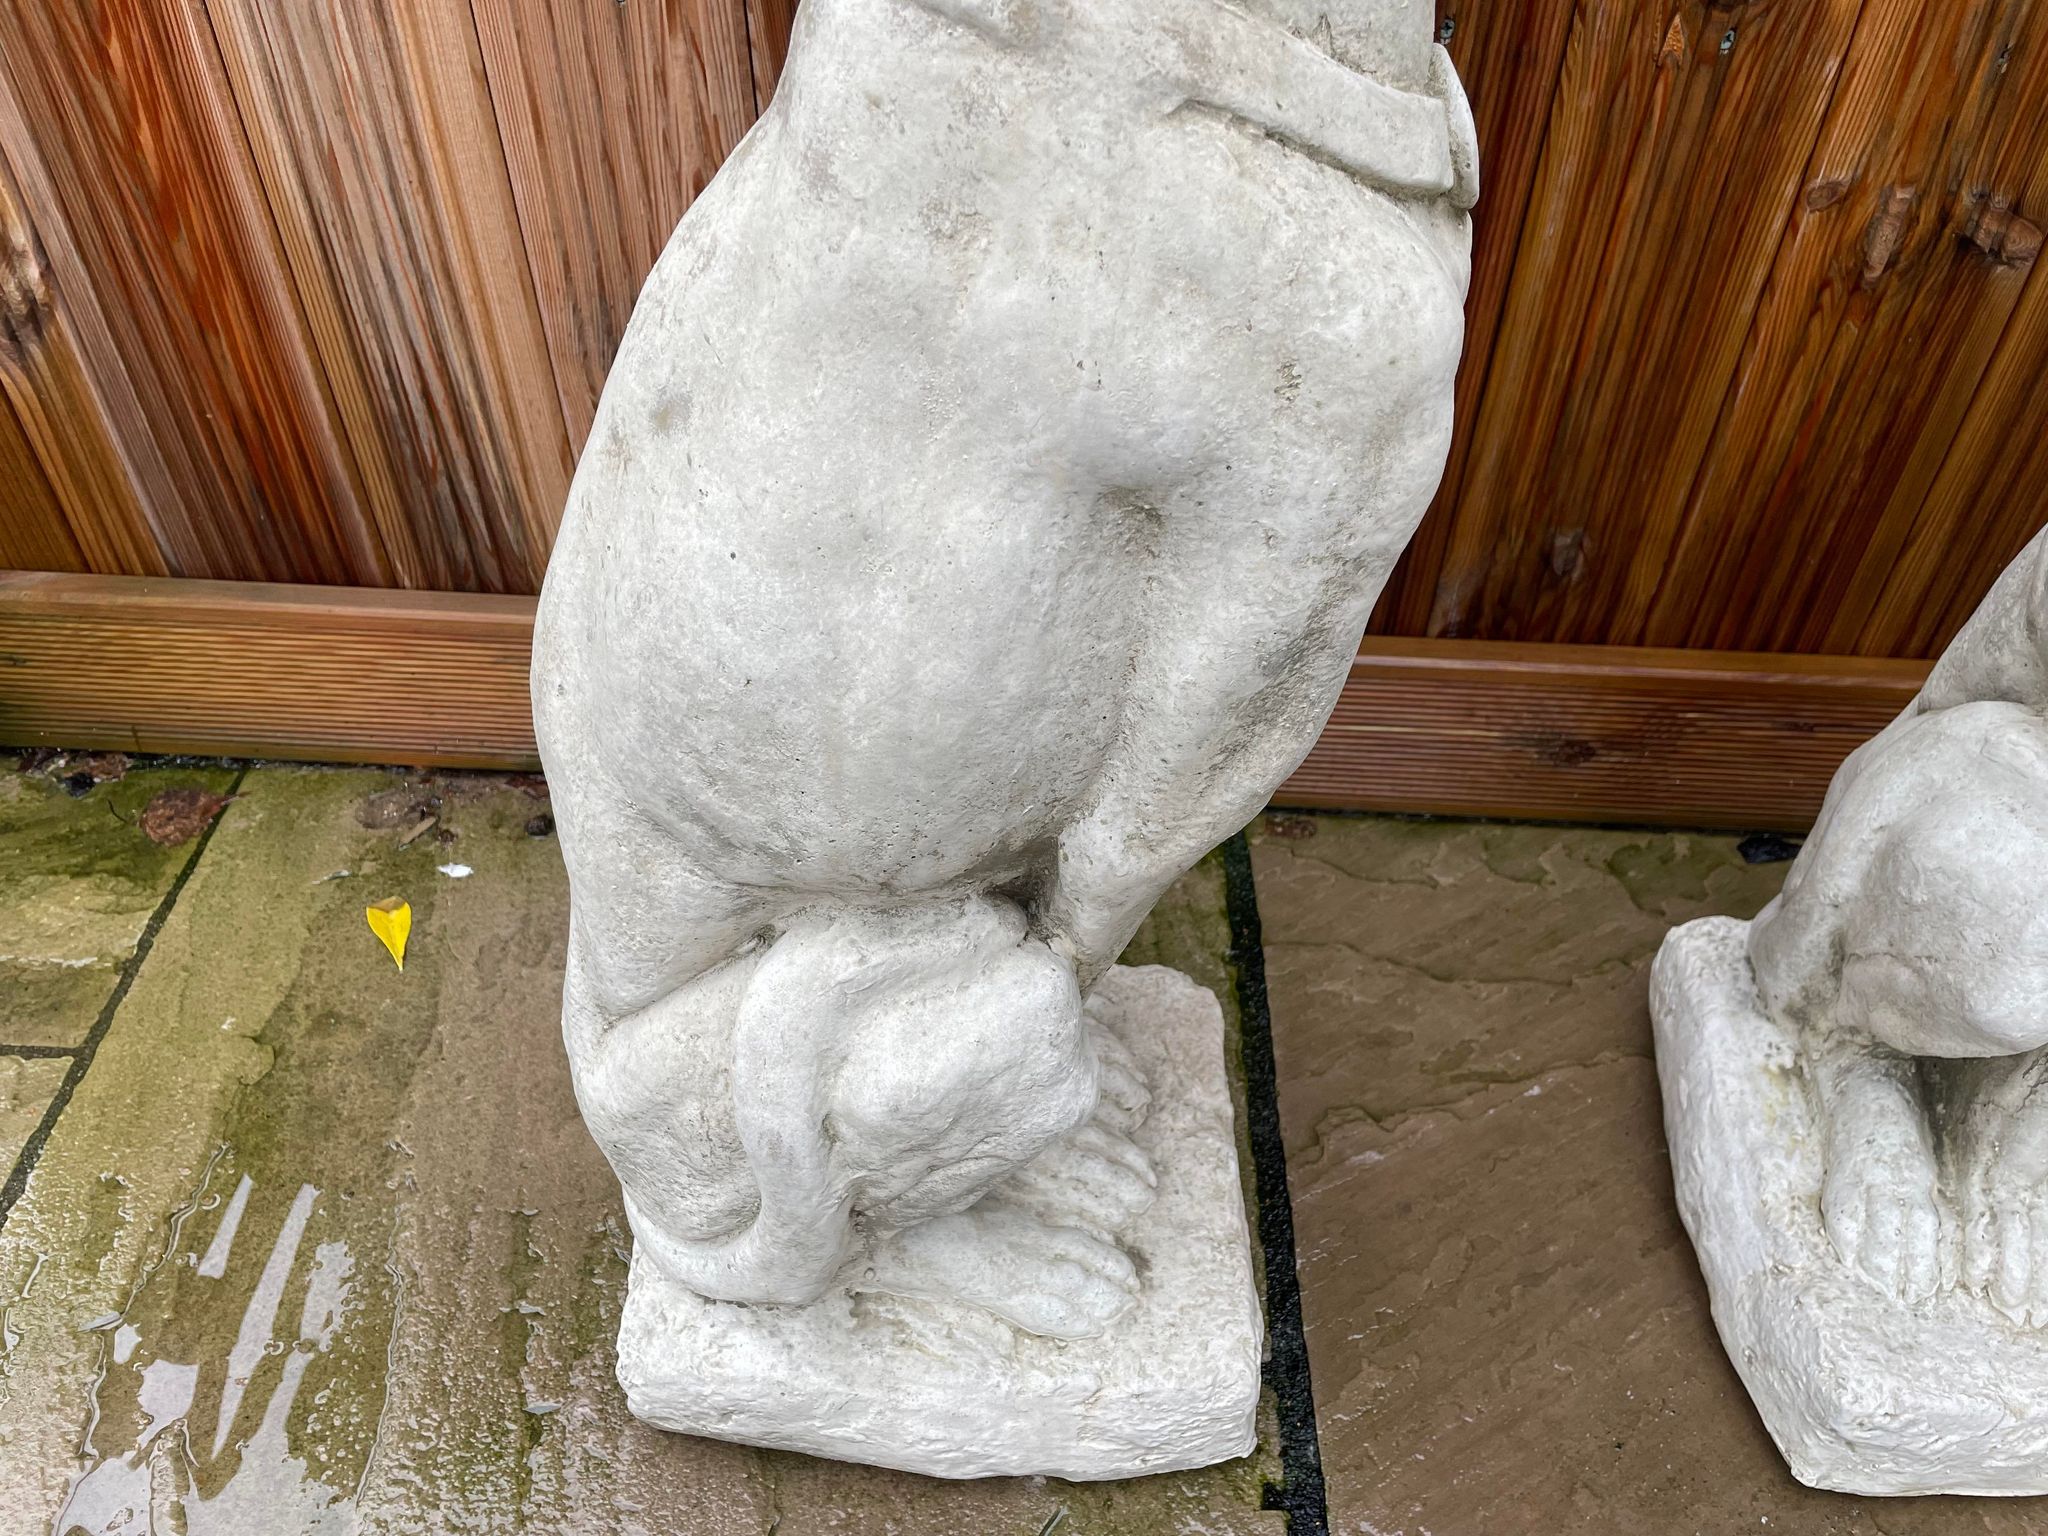 Greyhound Statue Set